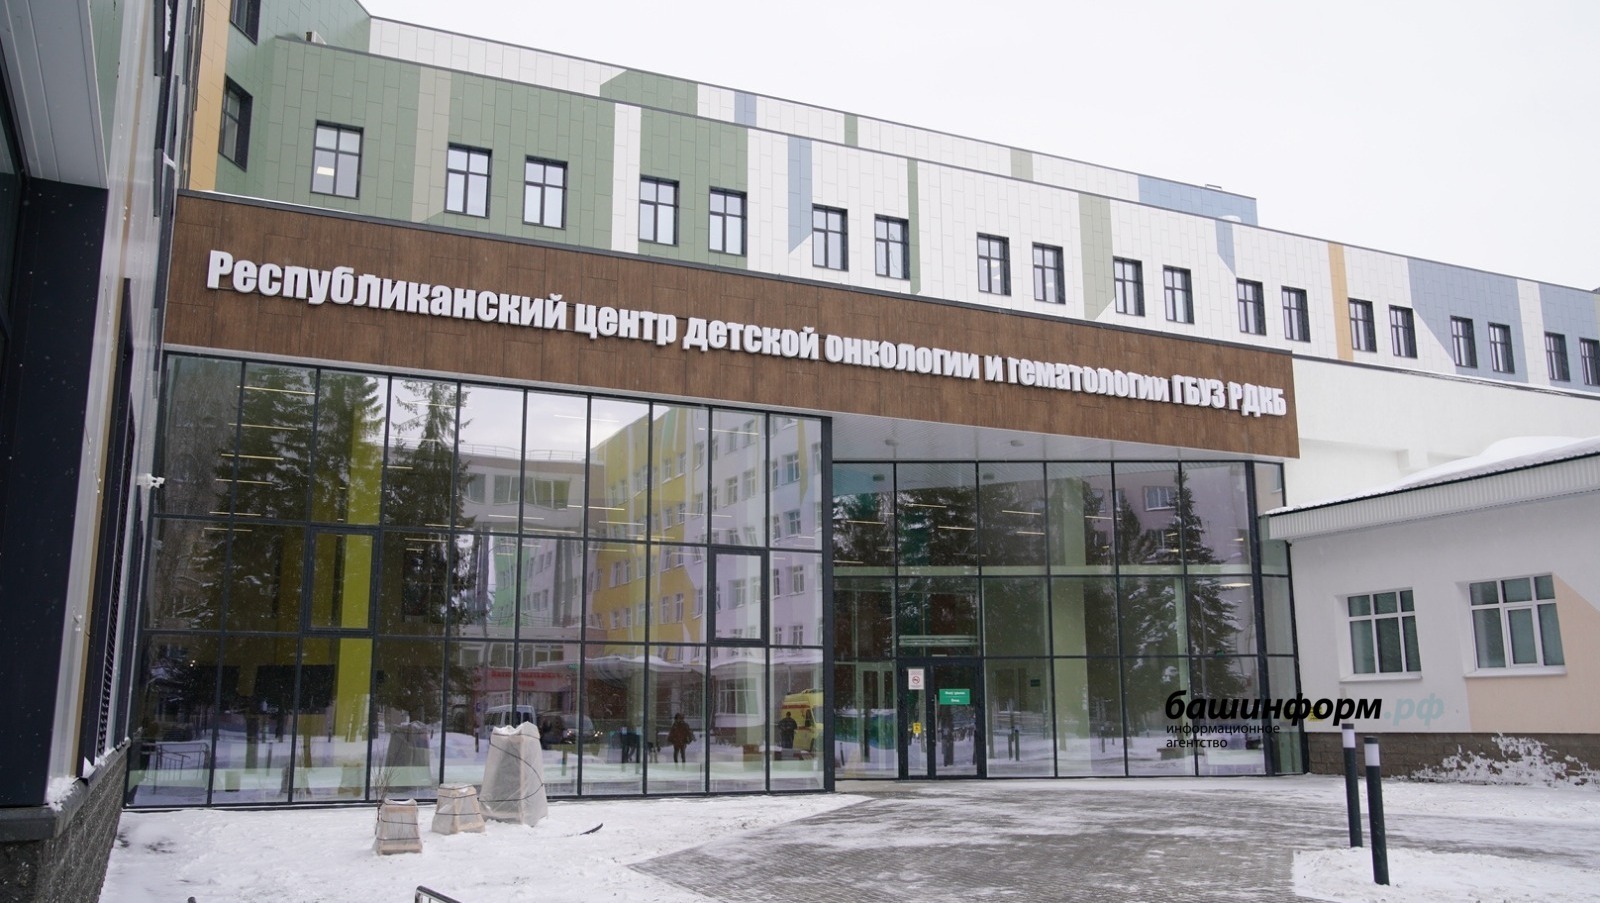 Центр детской онкологии, открывшийся в столице Башкирии, высоко оценил Владимир Путин